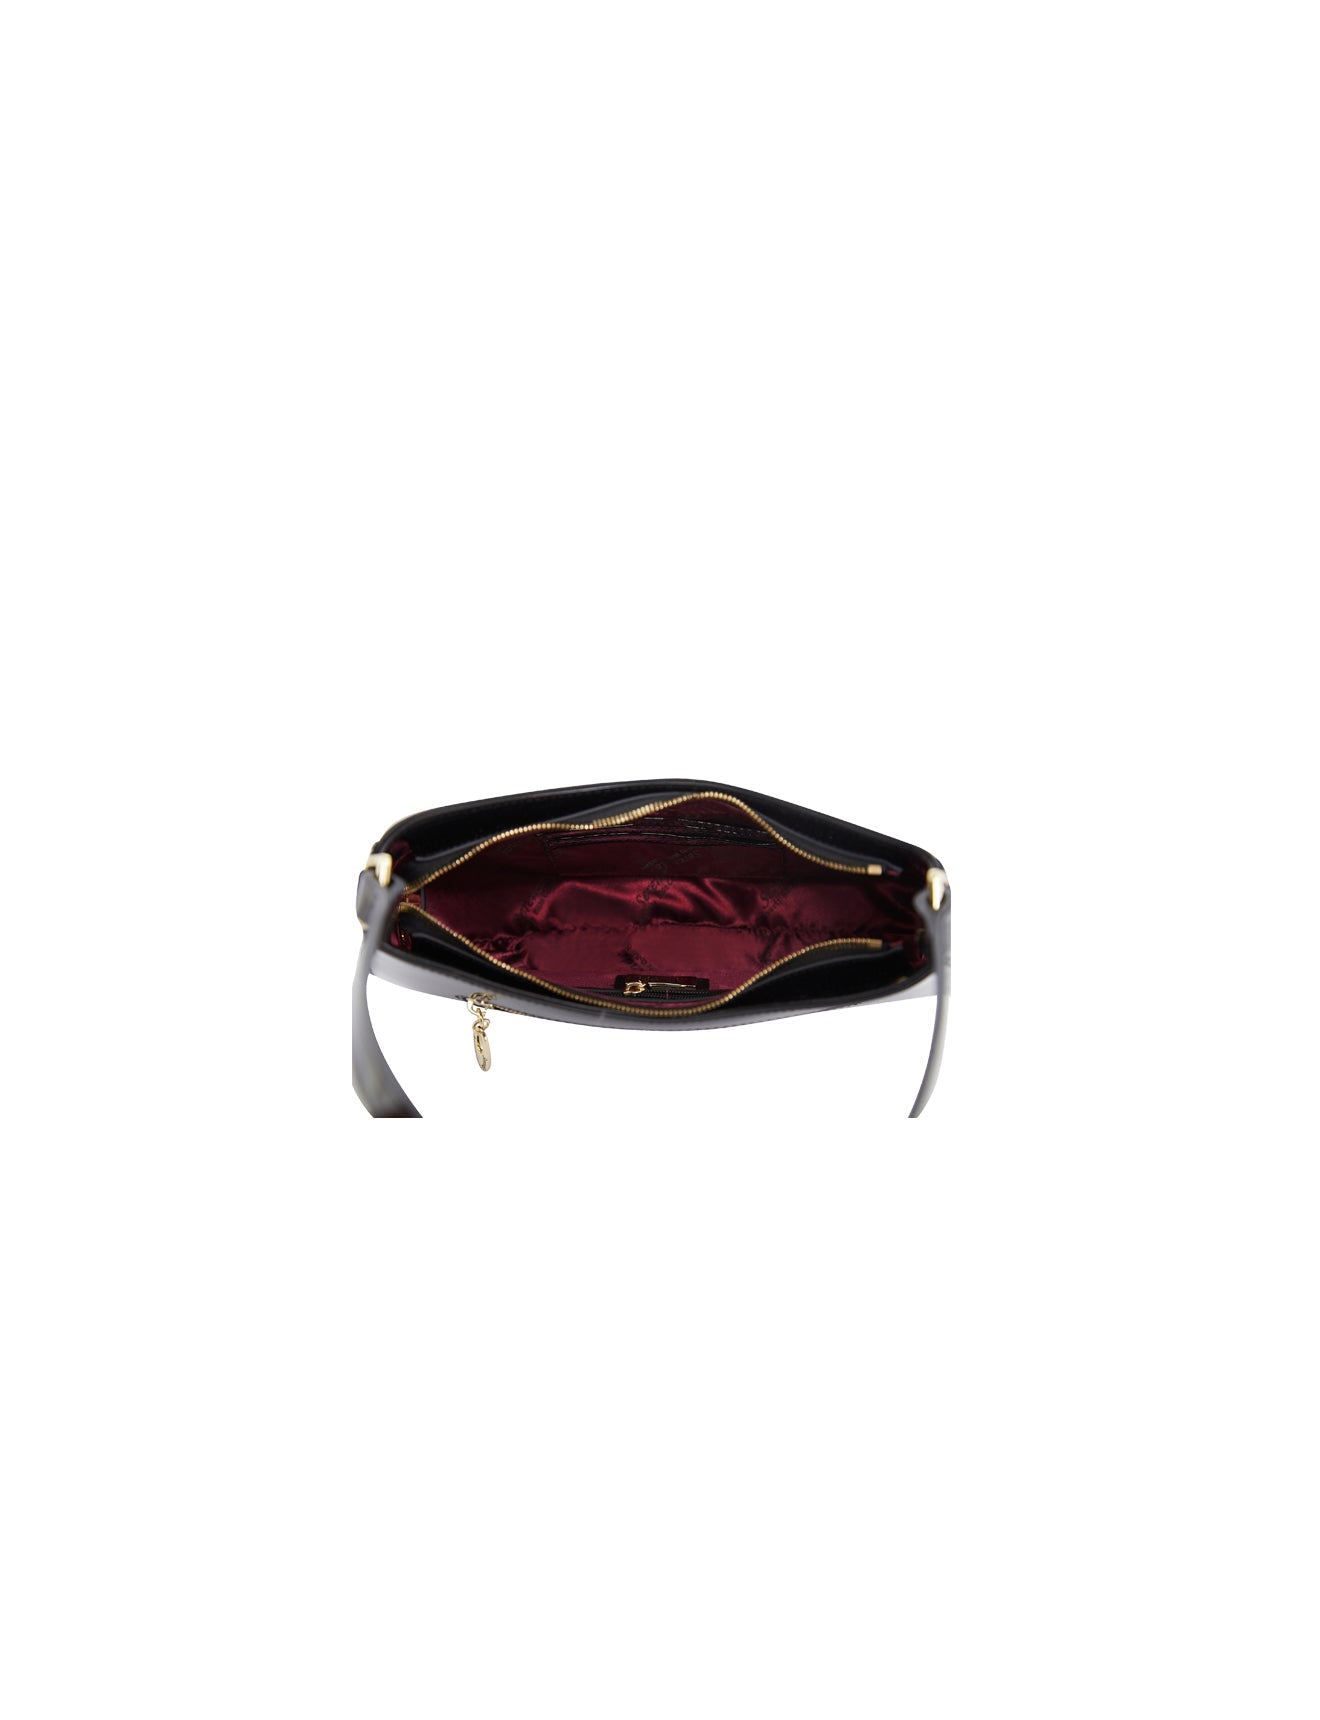 Serenade - Allura SV1-0821 Patent Leather Handbag - Black-6